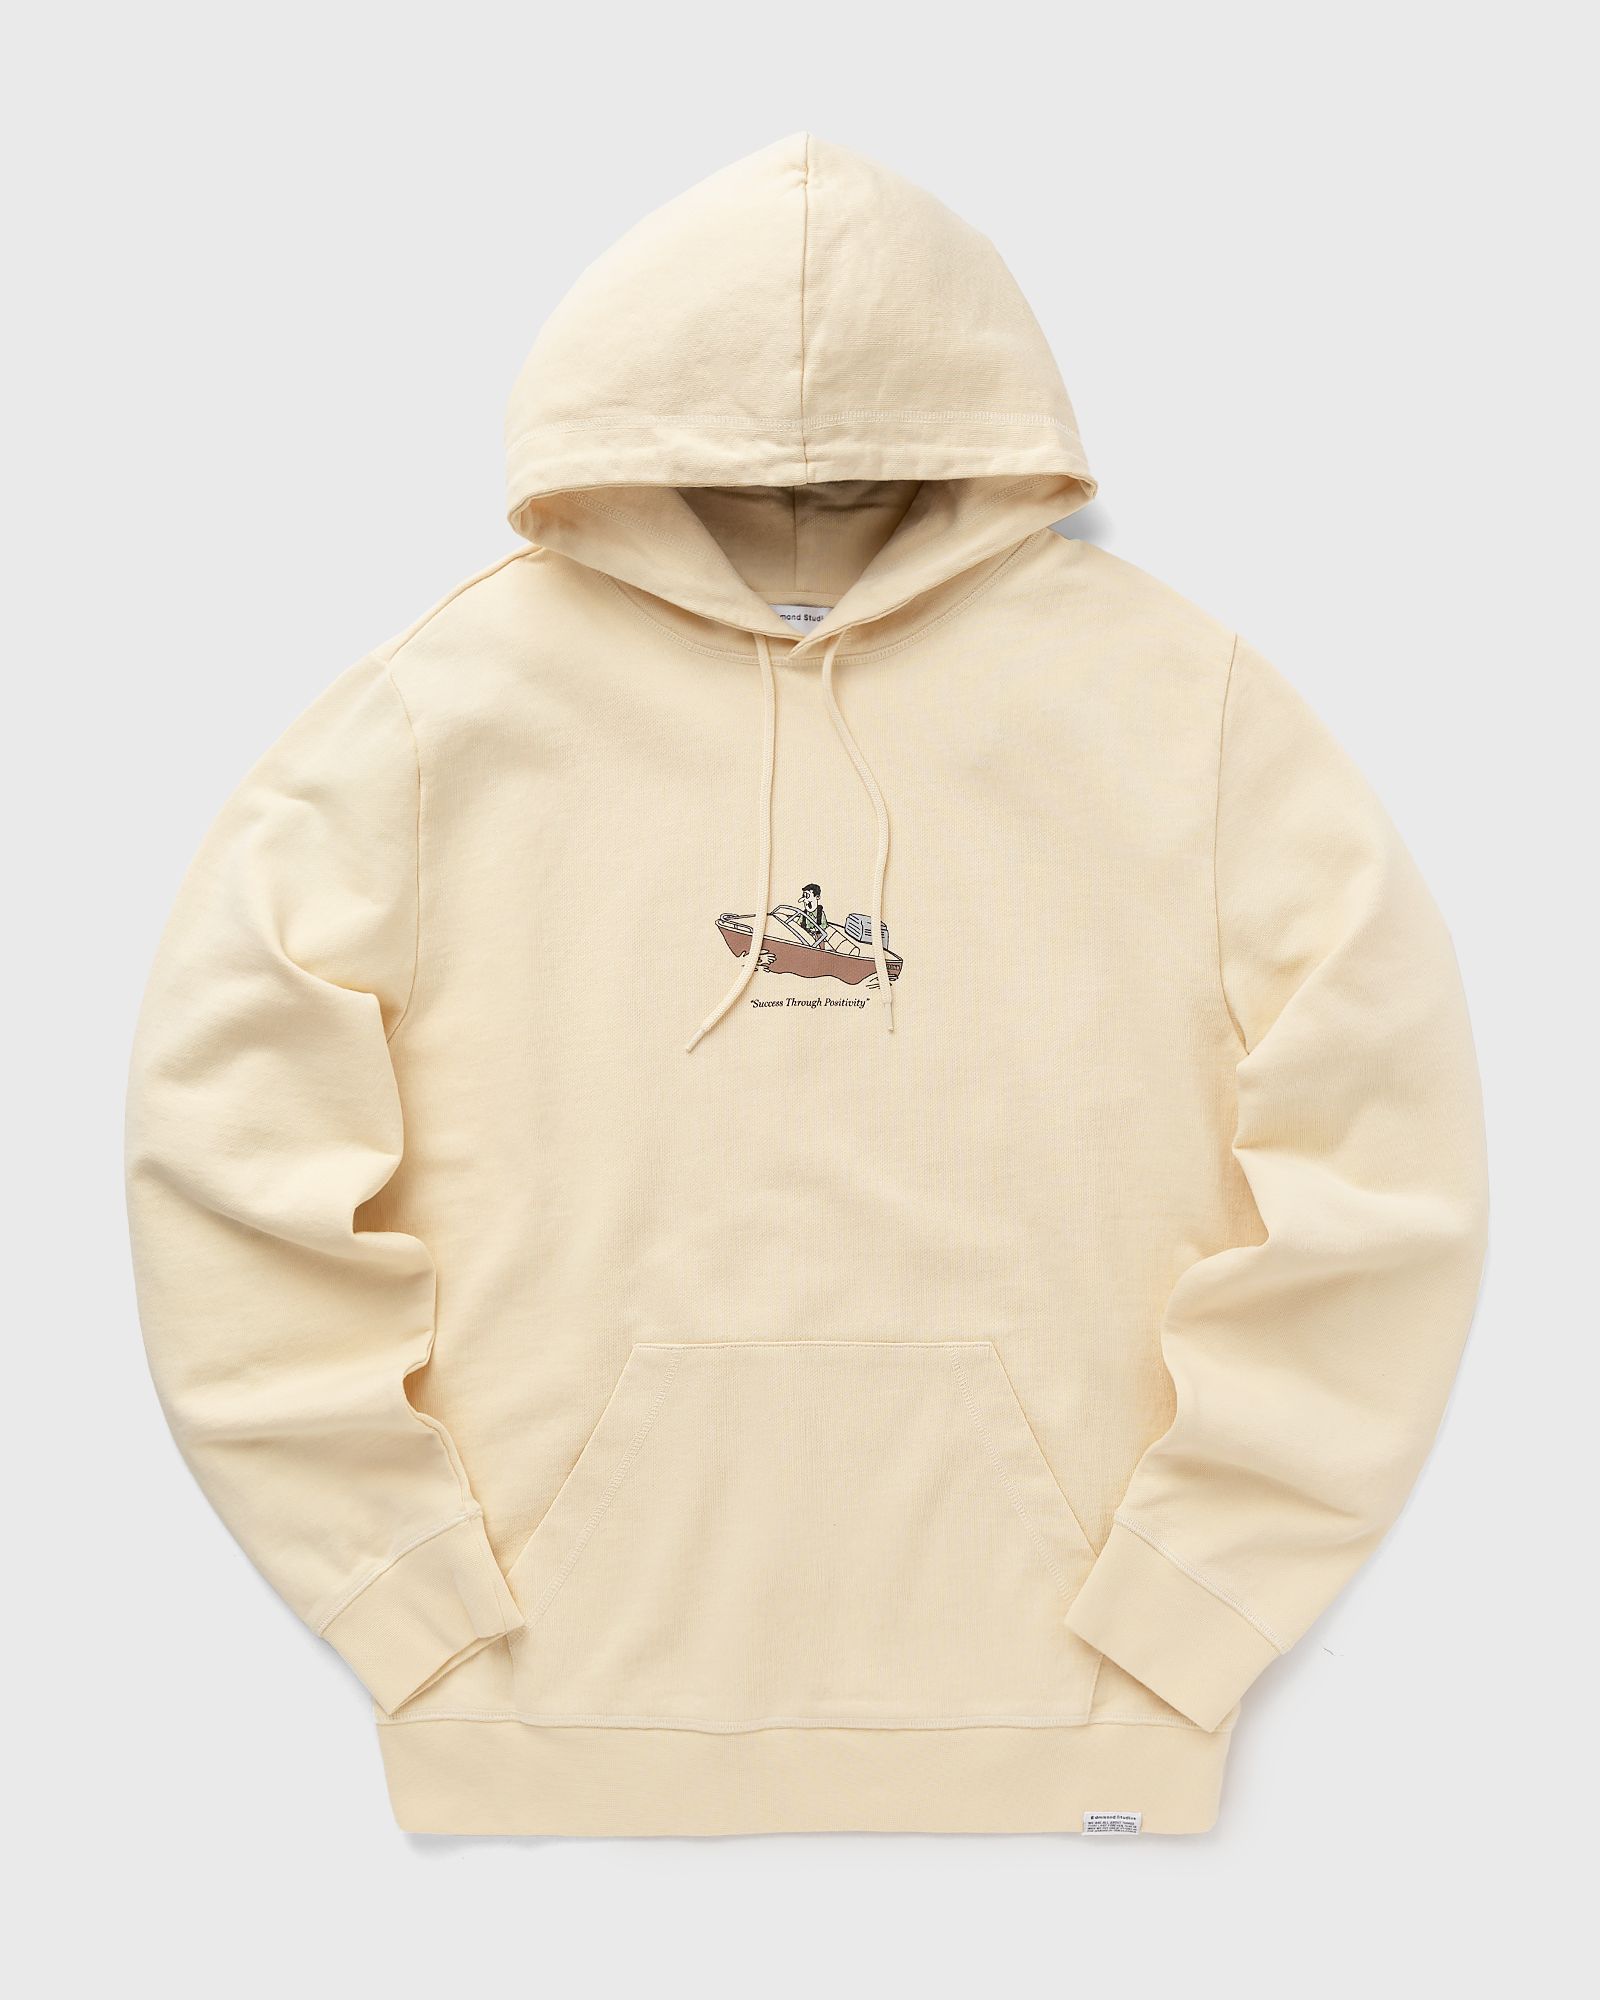 Edmmond Studios - basil hoodie men hoodies beige in größe:xxl